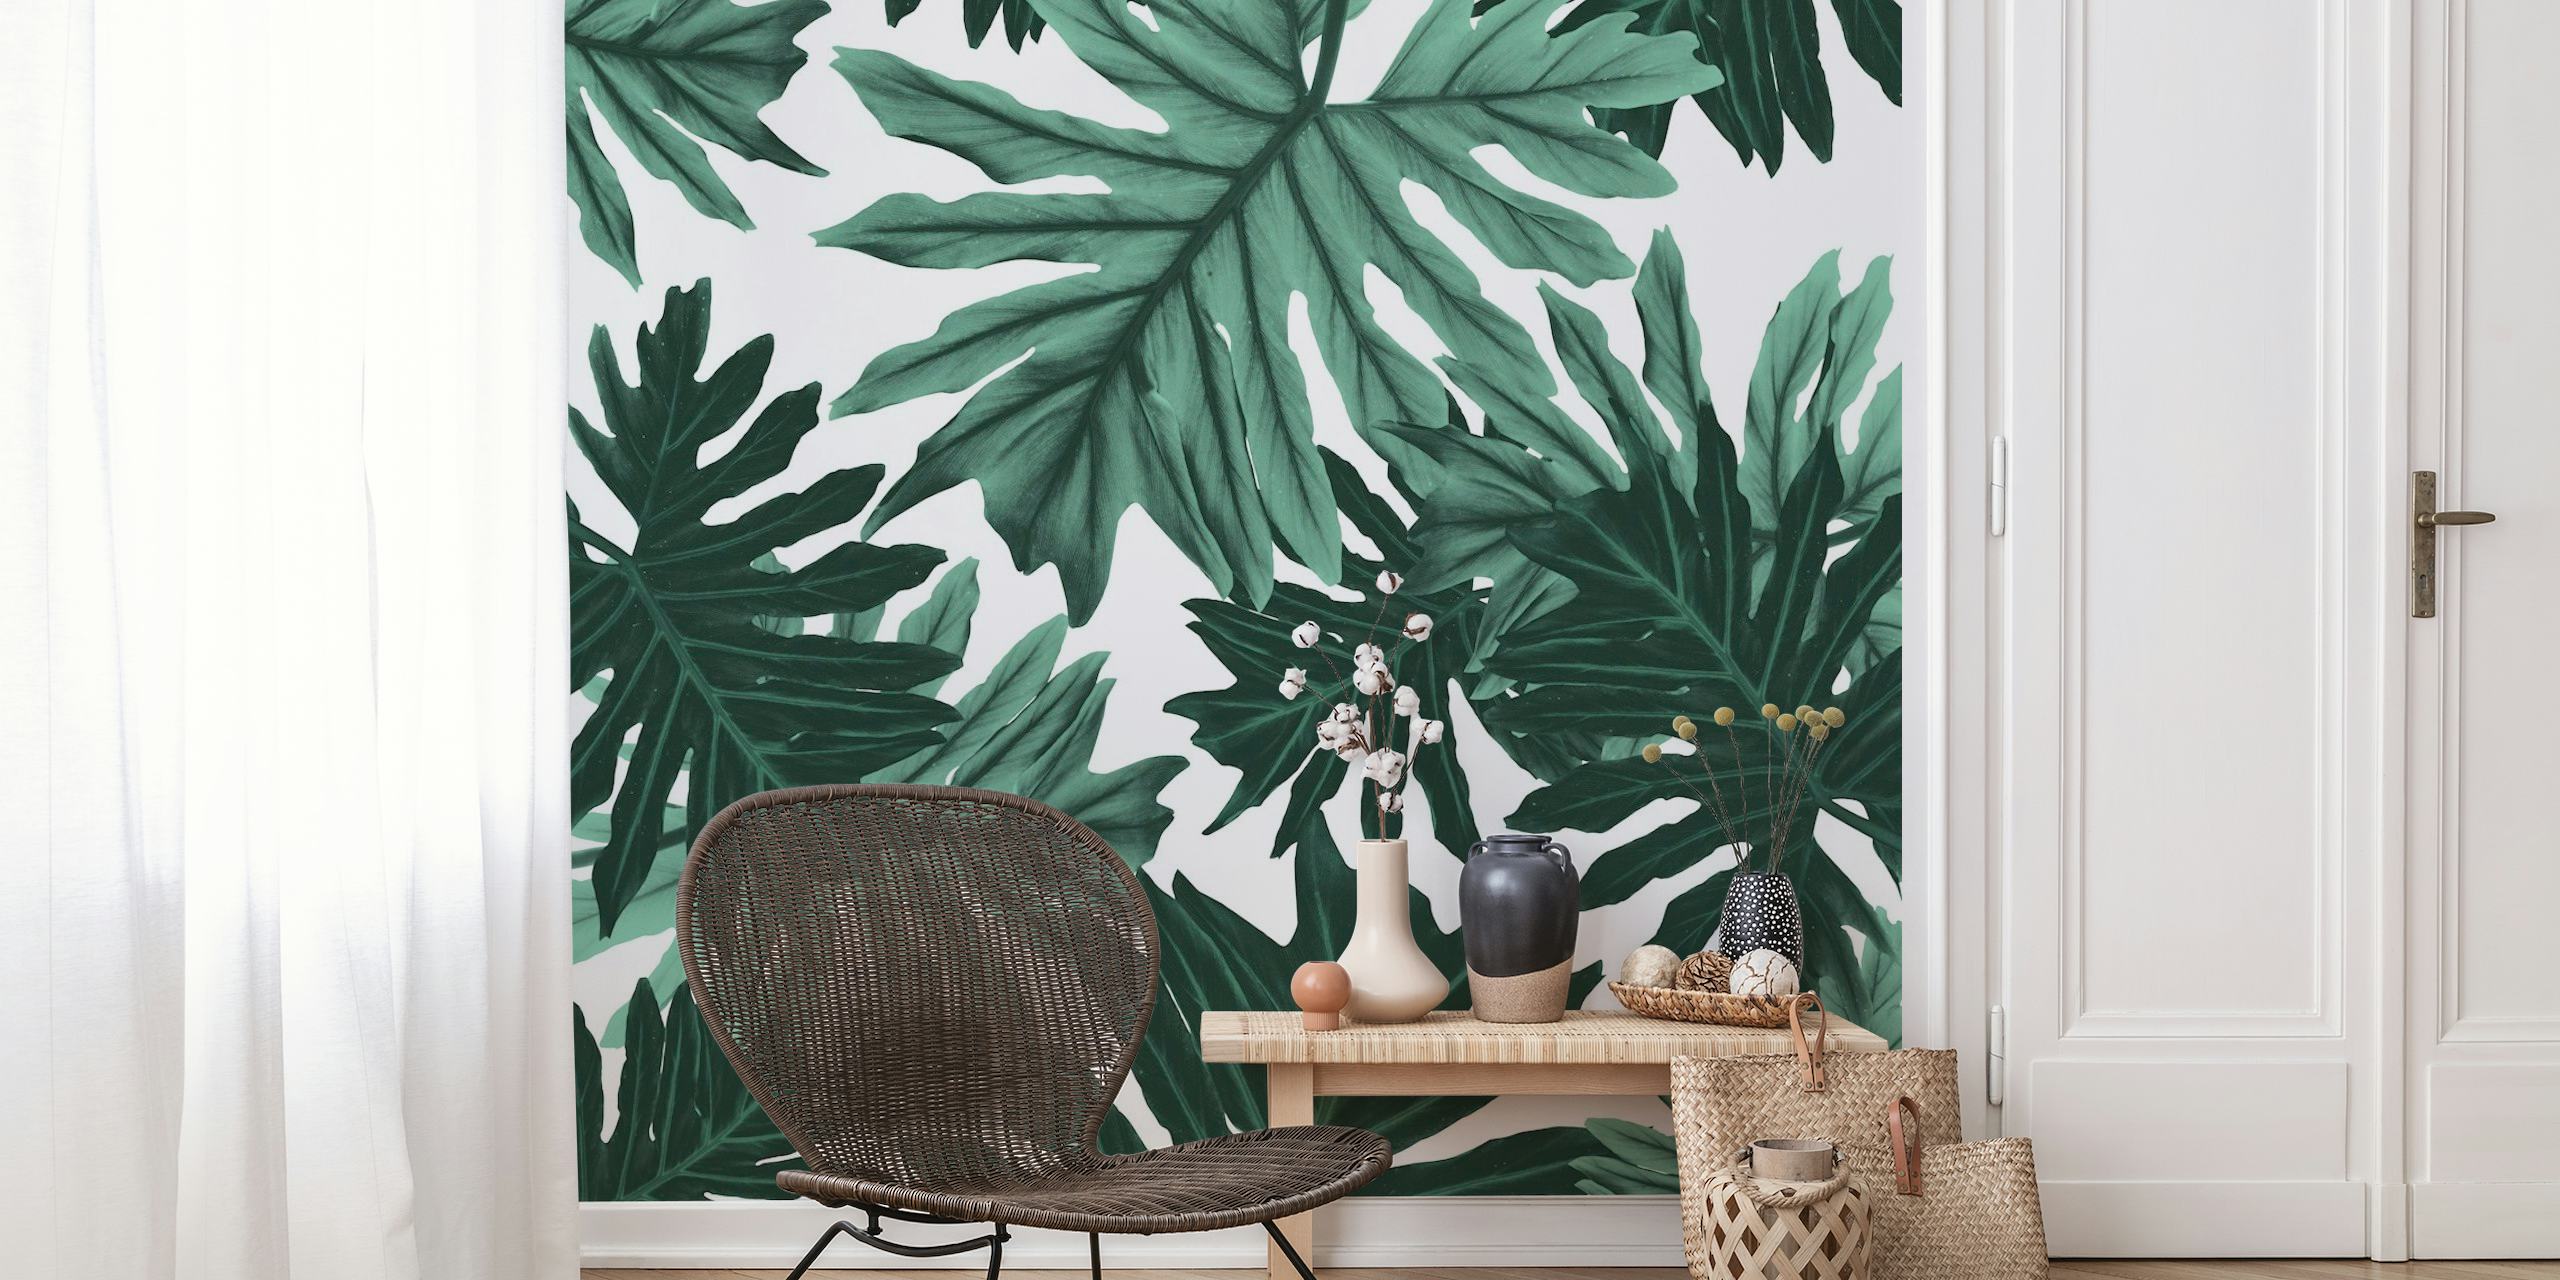 Muurschildering met tropische junglebladeren in groentinten, Philo Hope Tropical Jungle 6-ontwerp voor een op de natuur geïnspireerde inrichting.